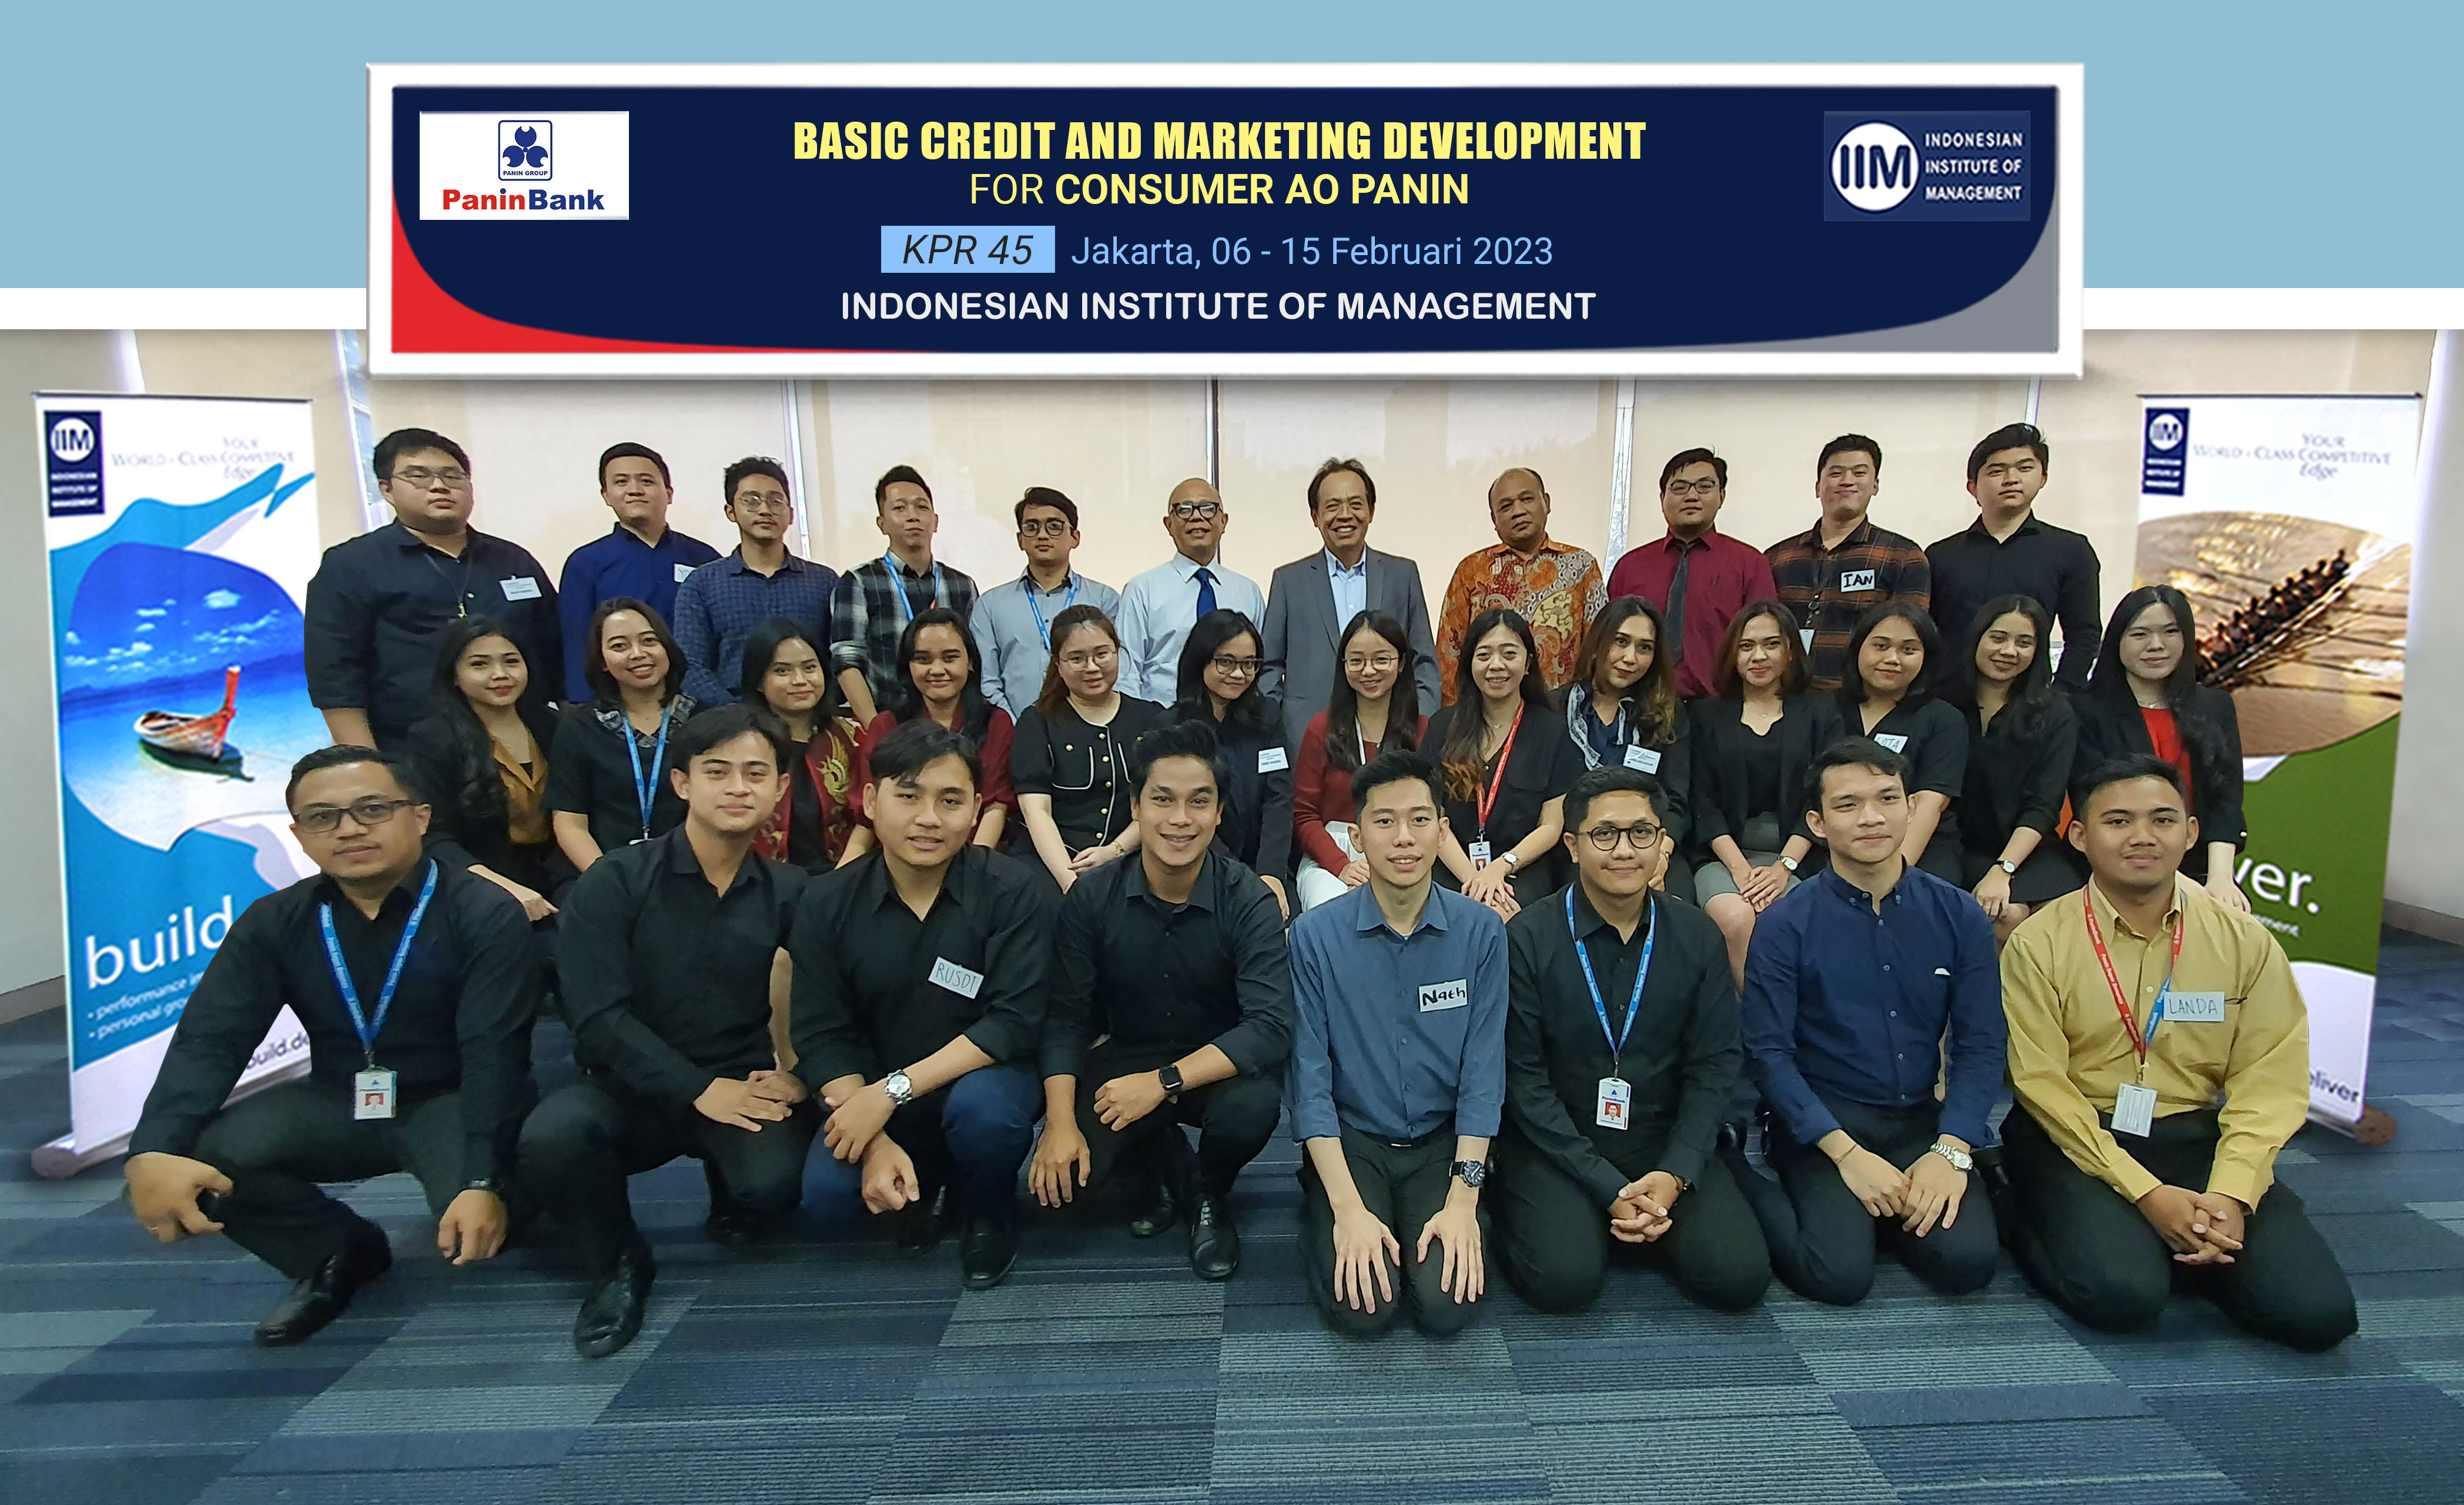 indonesian institute of management